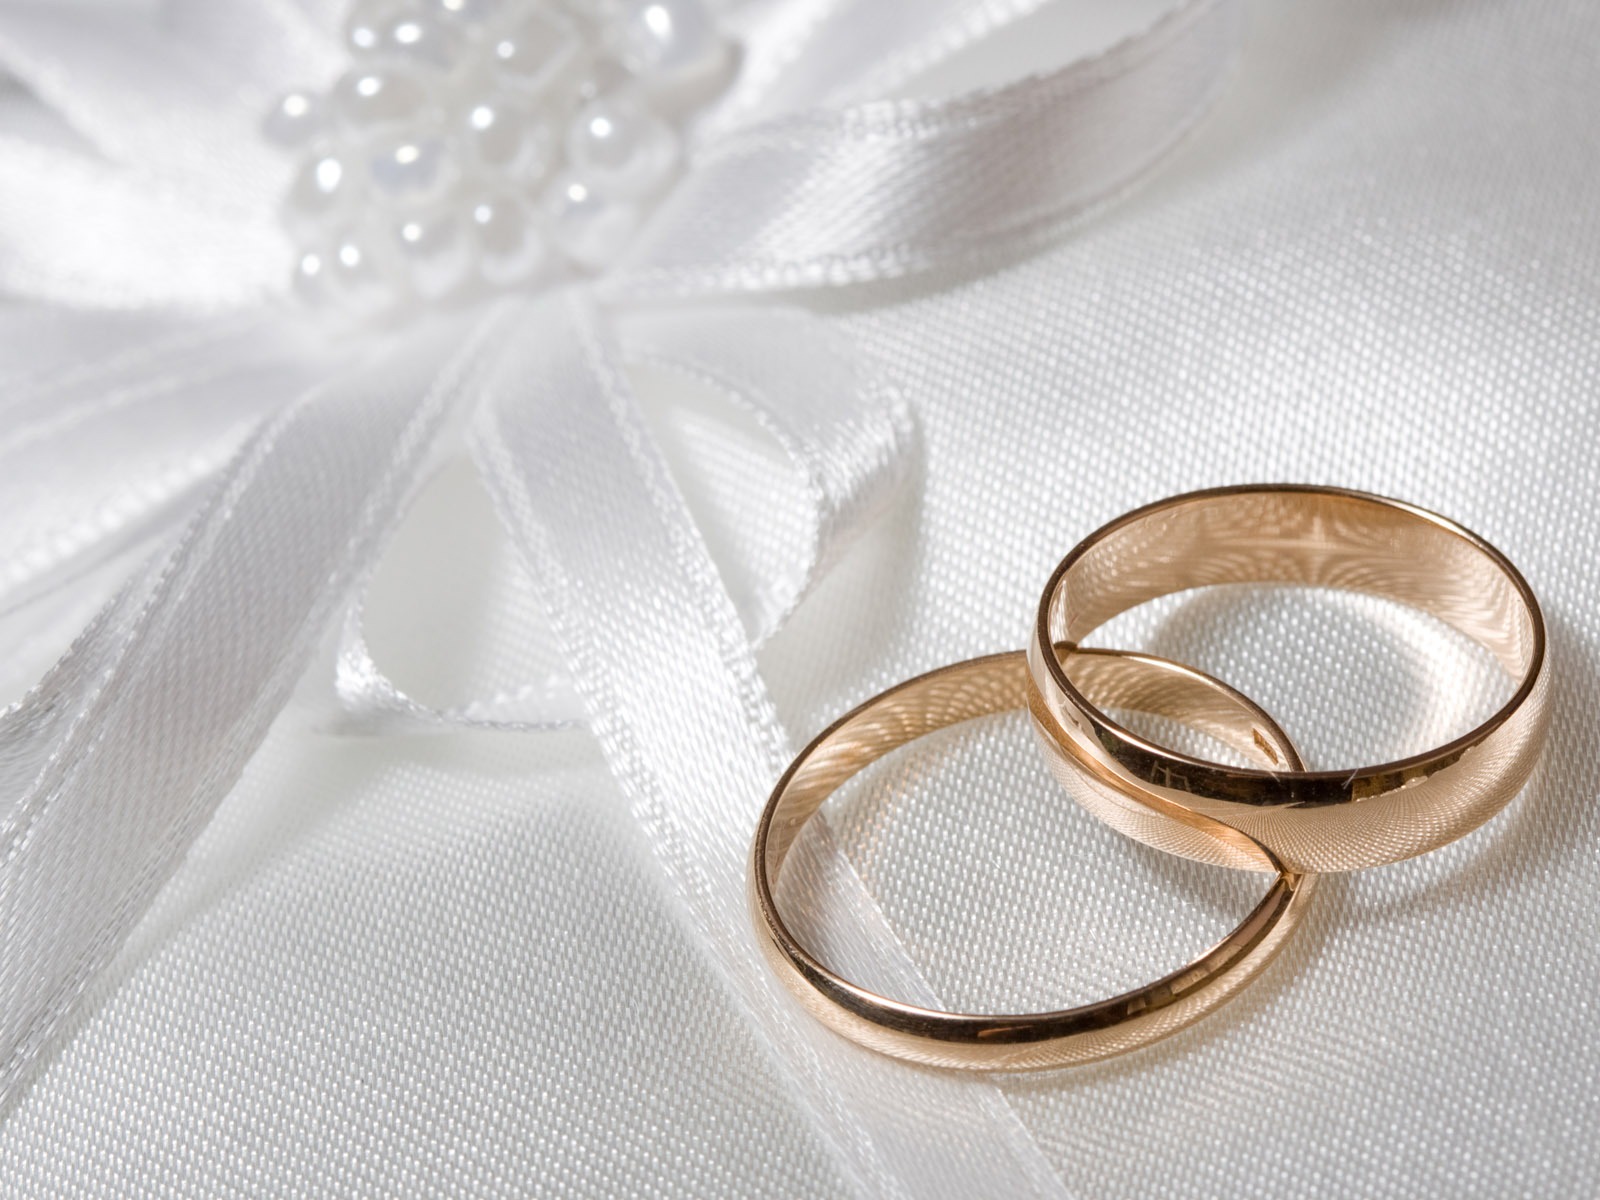 Mariage et papier peint anneau de mariage (2) #14 - 1600x1200